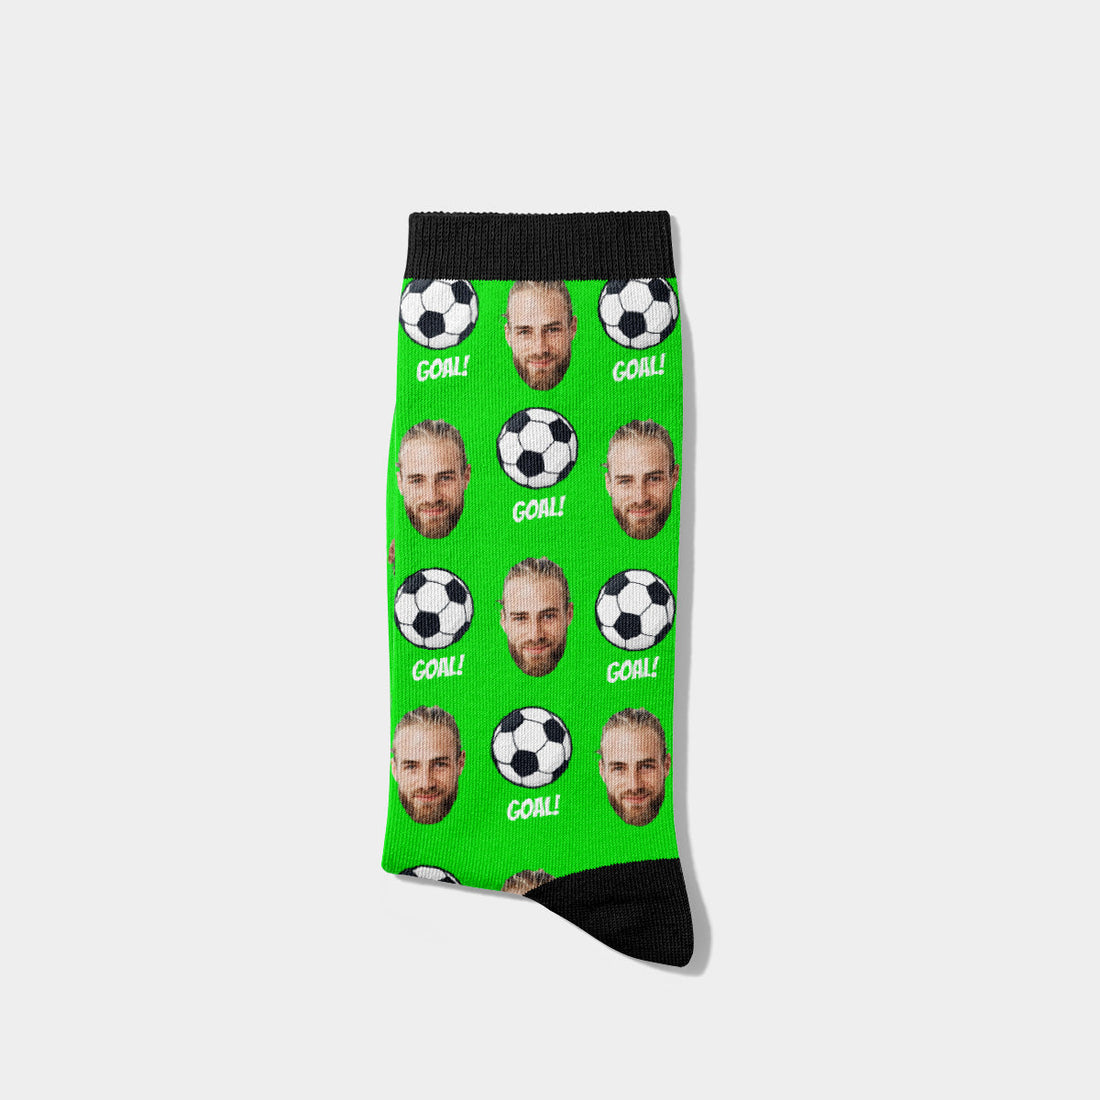 Personalisierte Fußball Socken mit Gesicht